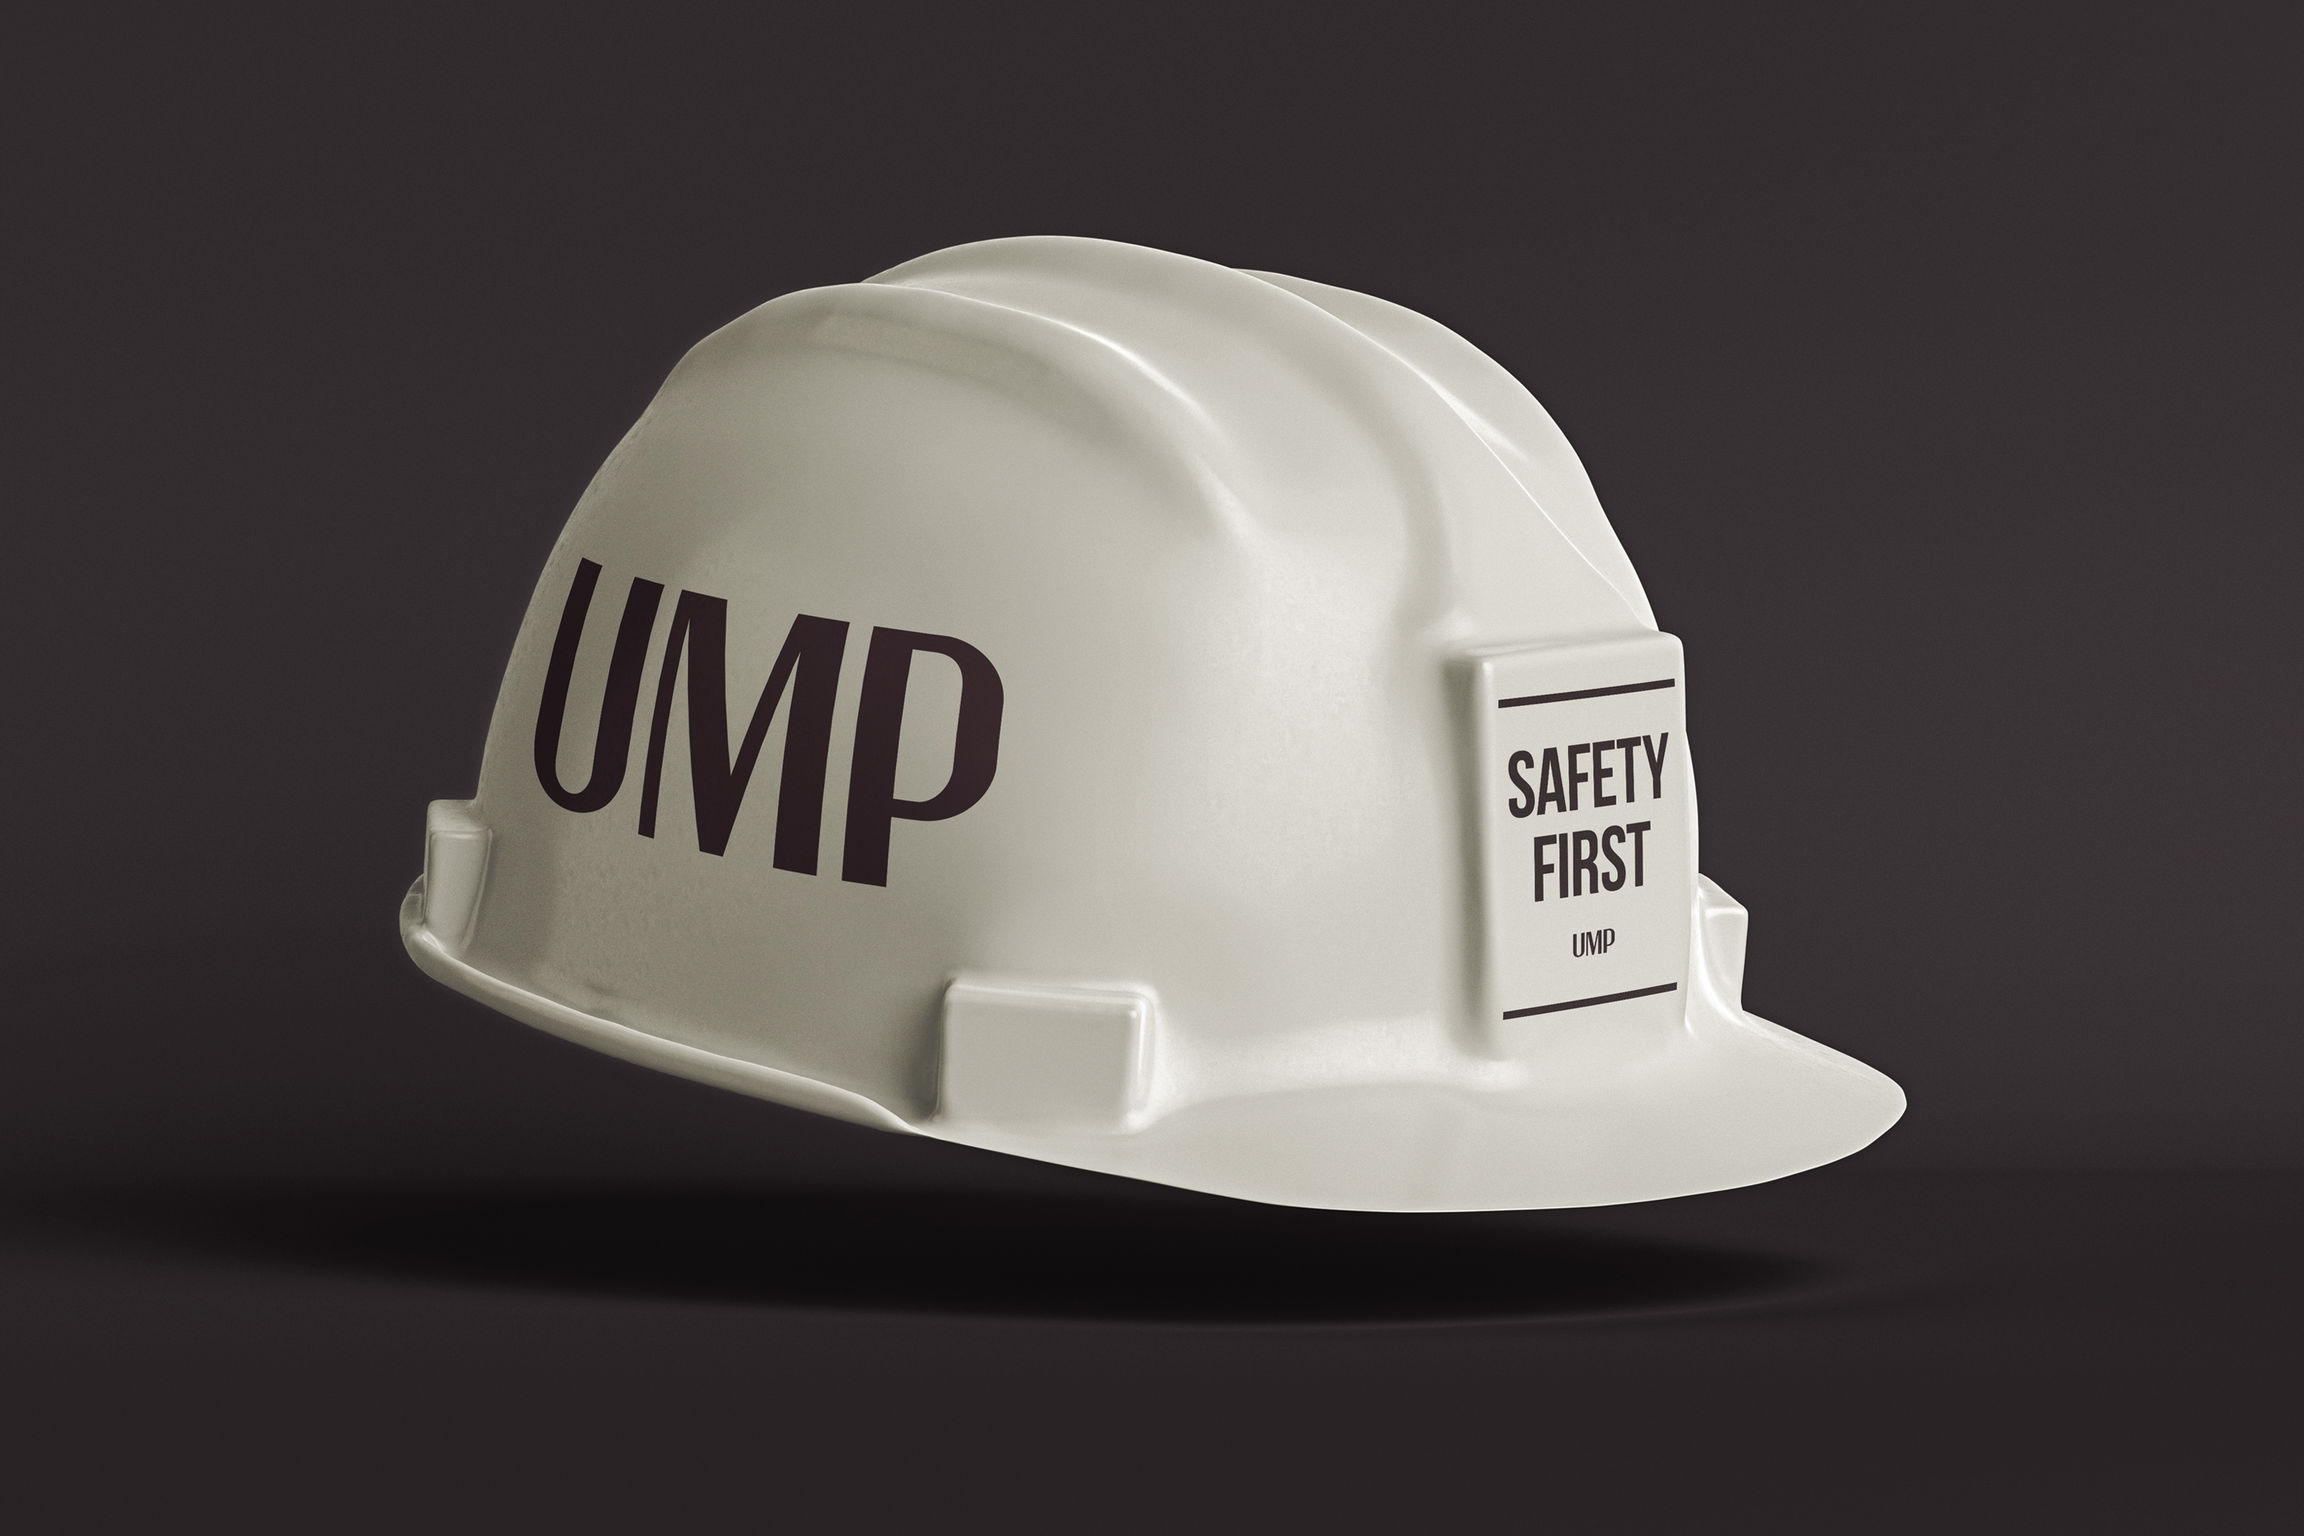 UMP Corporate Identity Design